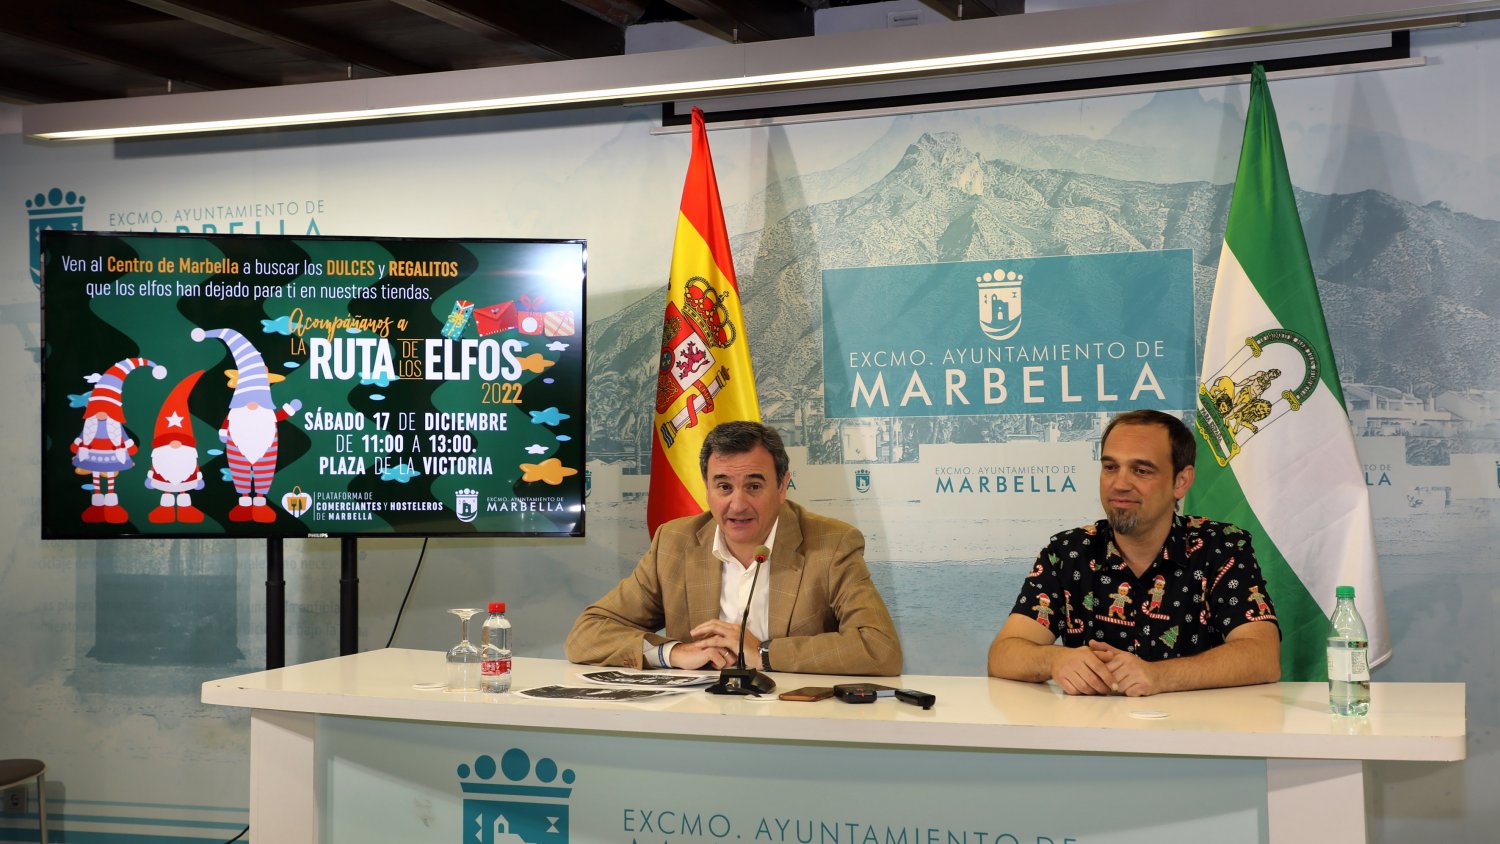 El Ayuntamiento de Marbella respalda la III Ruta de los Elfos